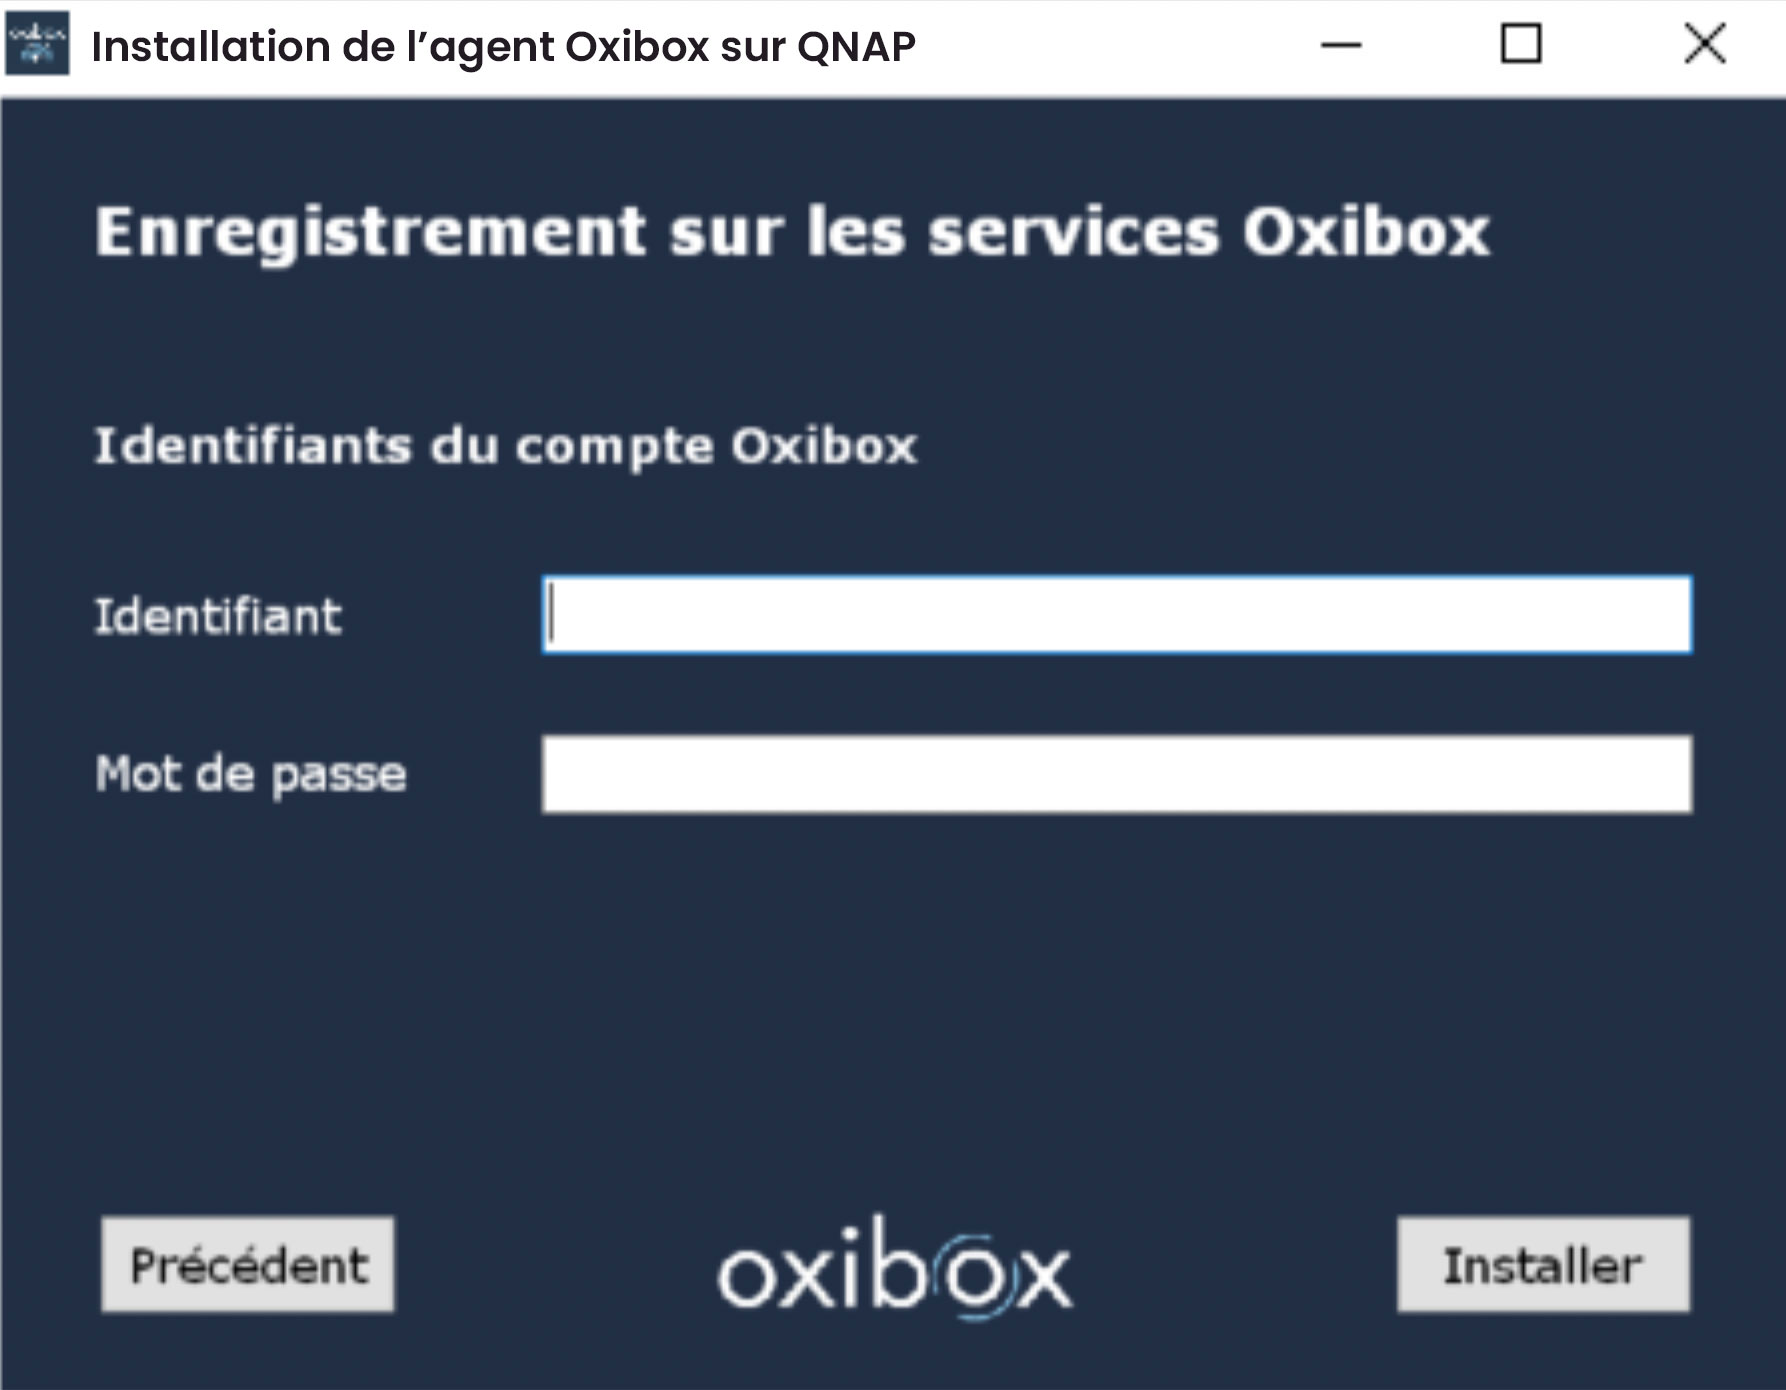 Agent Oxibox QNAP enregistrement